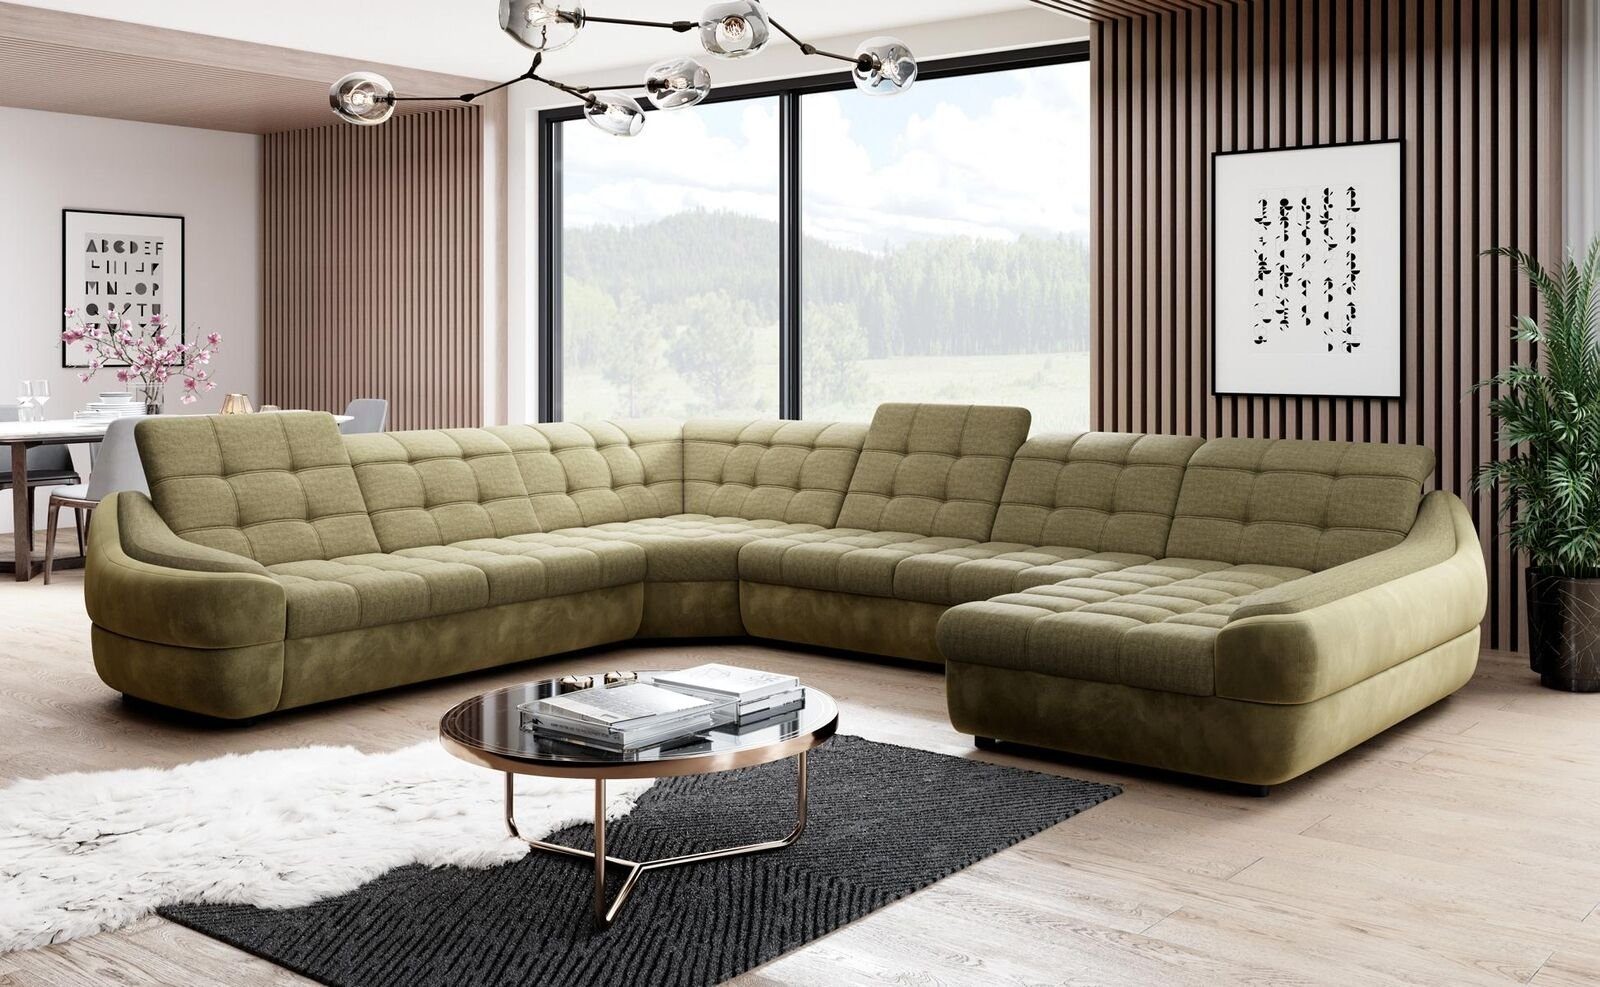 JVmoebel Ecksofa, Sofa Couch Polster Garnitur Wohnlandschaft Design Ecksofa Textil Neu